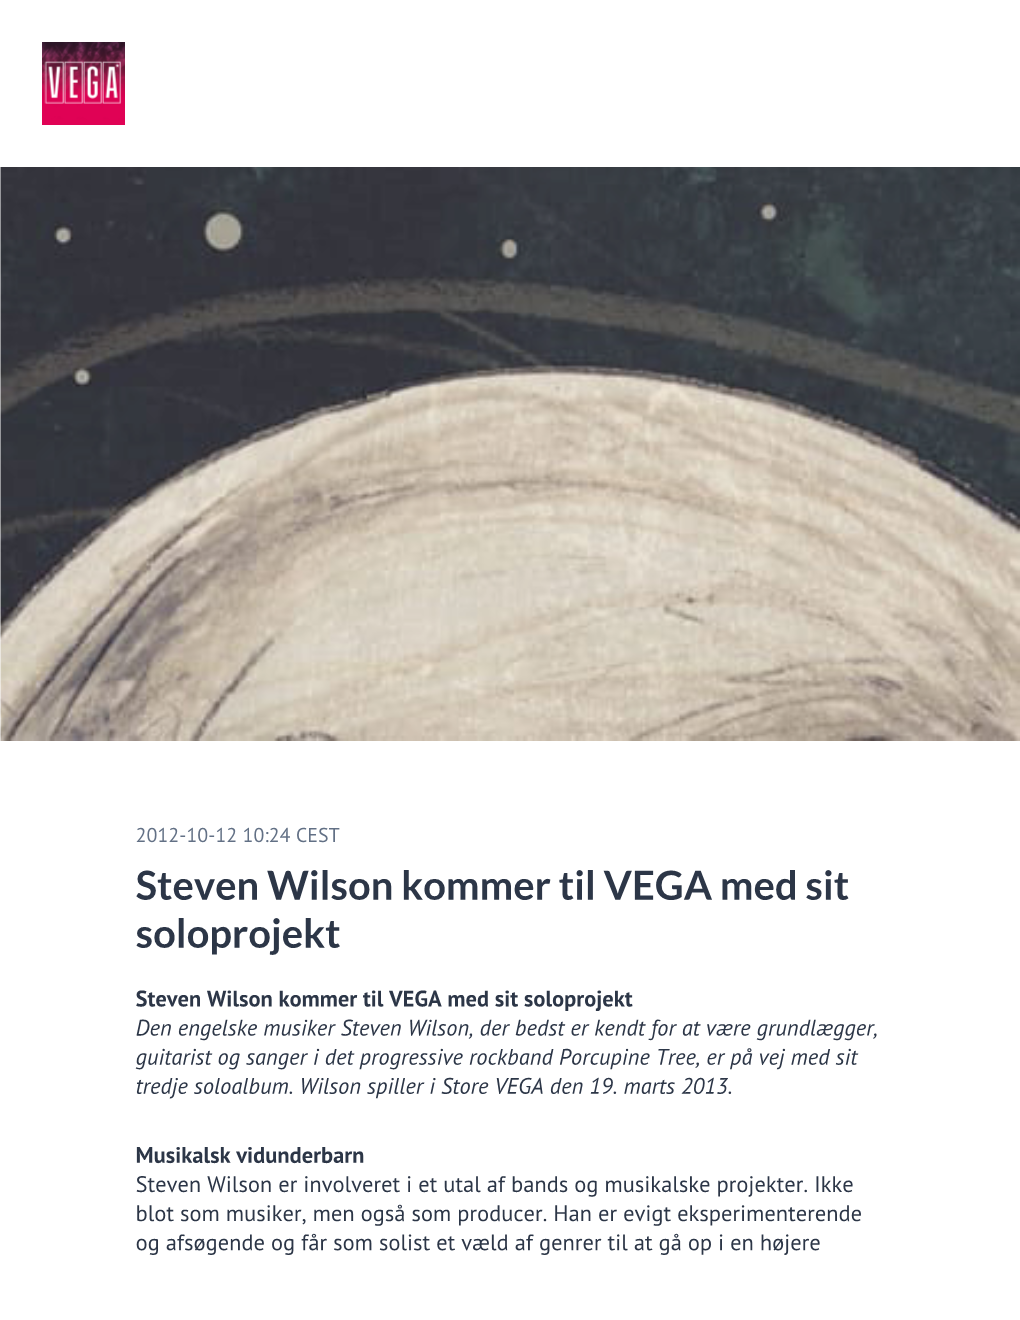 Steven Wilson Kommer Til VEGA Med Sit Soloprojekt